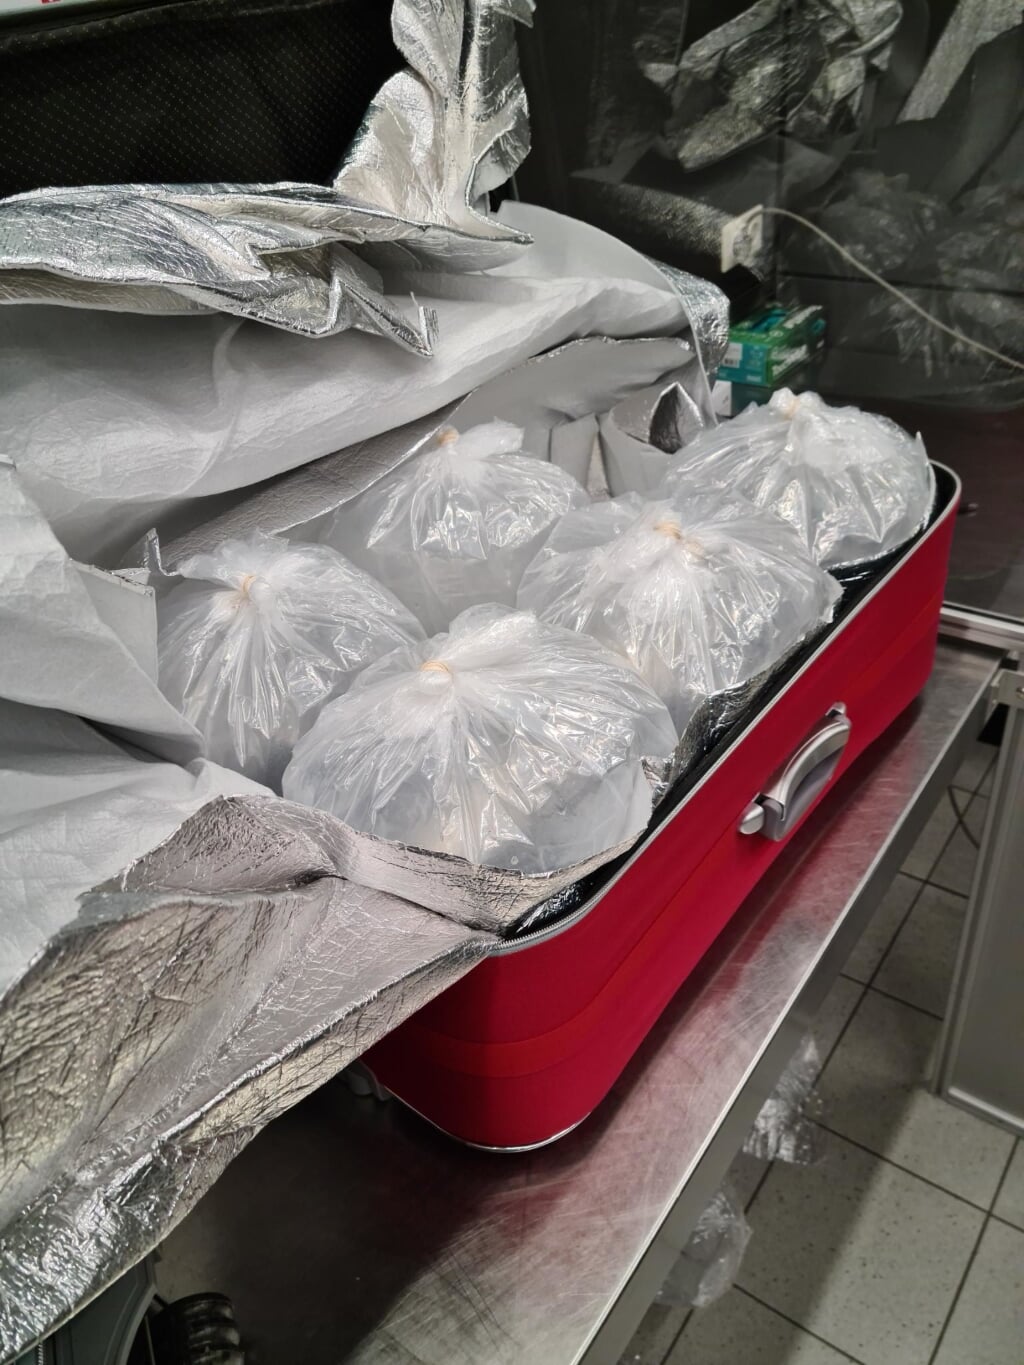 H In acht koffers werden zakjes met glasaal aangetroffen, in totaal 105 kilo. De handelswaarde in de Europese Unie is circa 285 euro per kilo, maar op de illegale Aziatische markt een veelvoud daarvan. (Foto: NVWA)